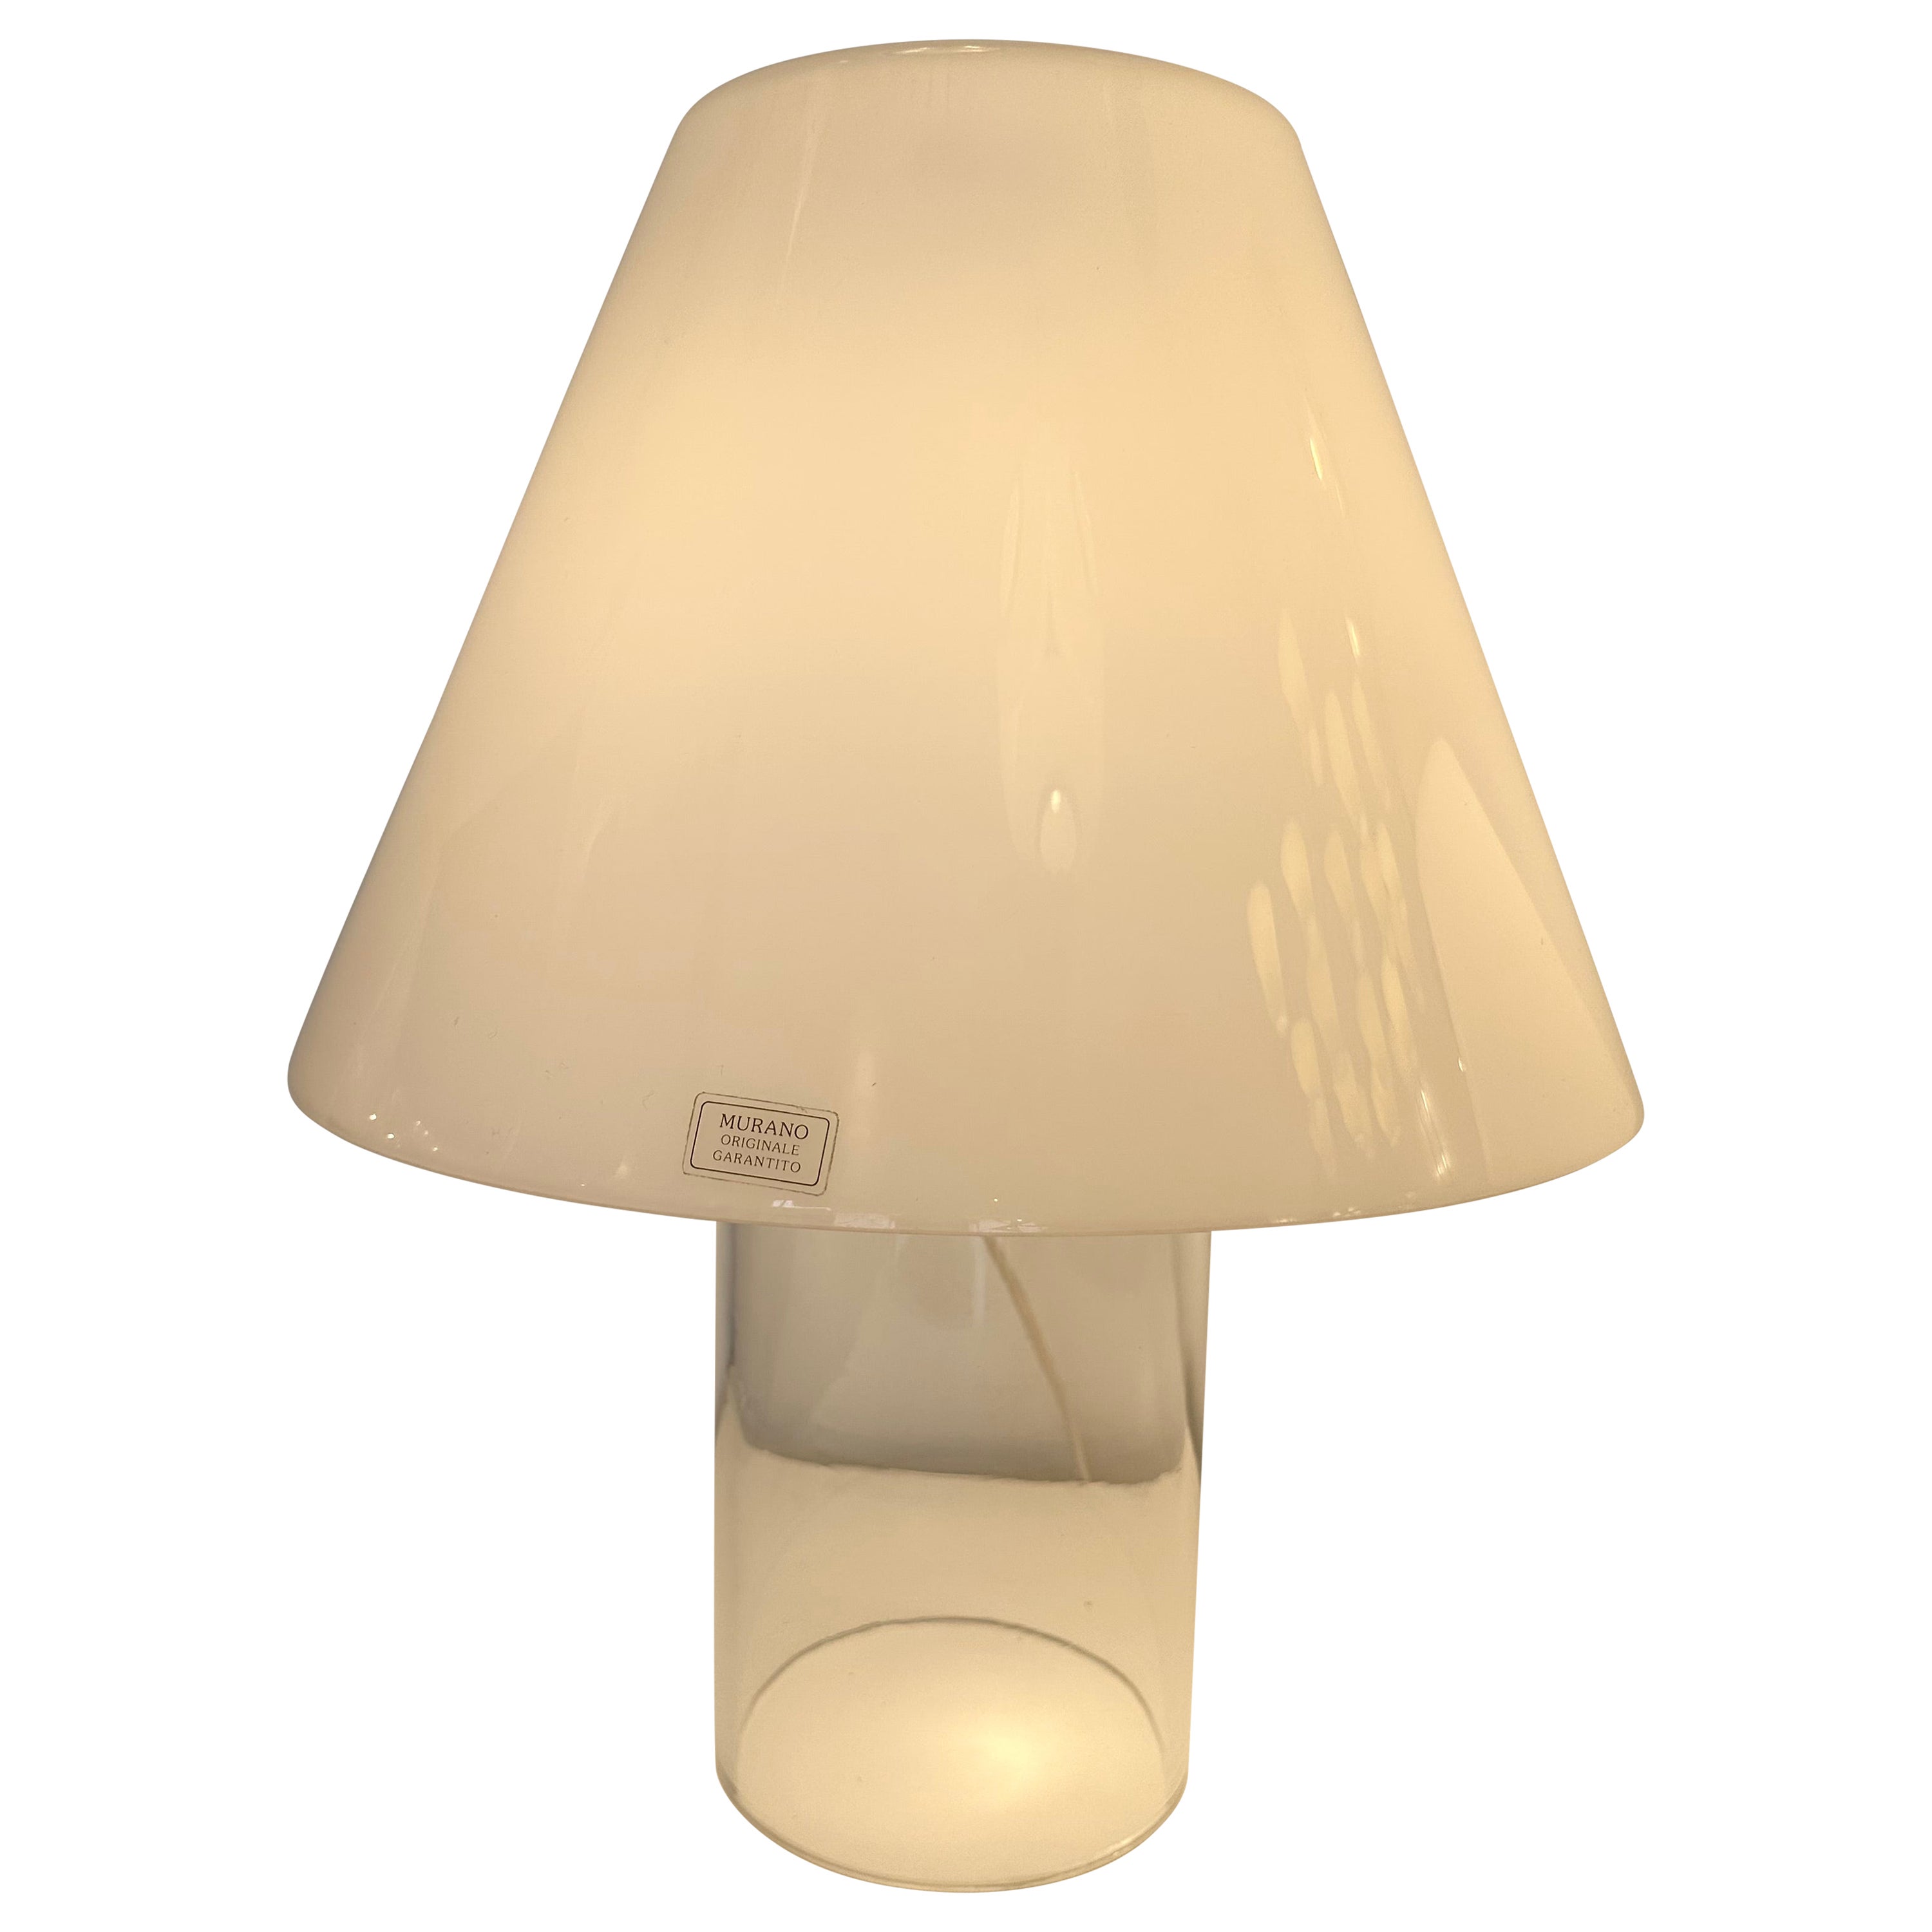 Lampe mit Murano-Glasschirm von Murano Due, Italien, 1980er Jahre